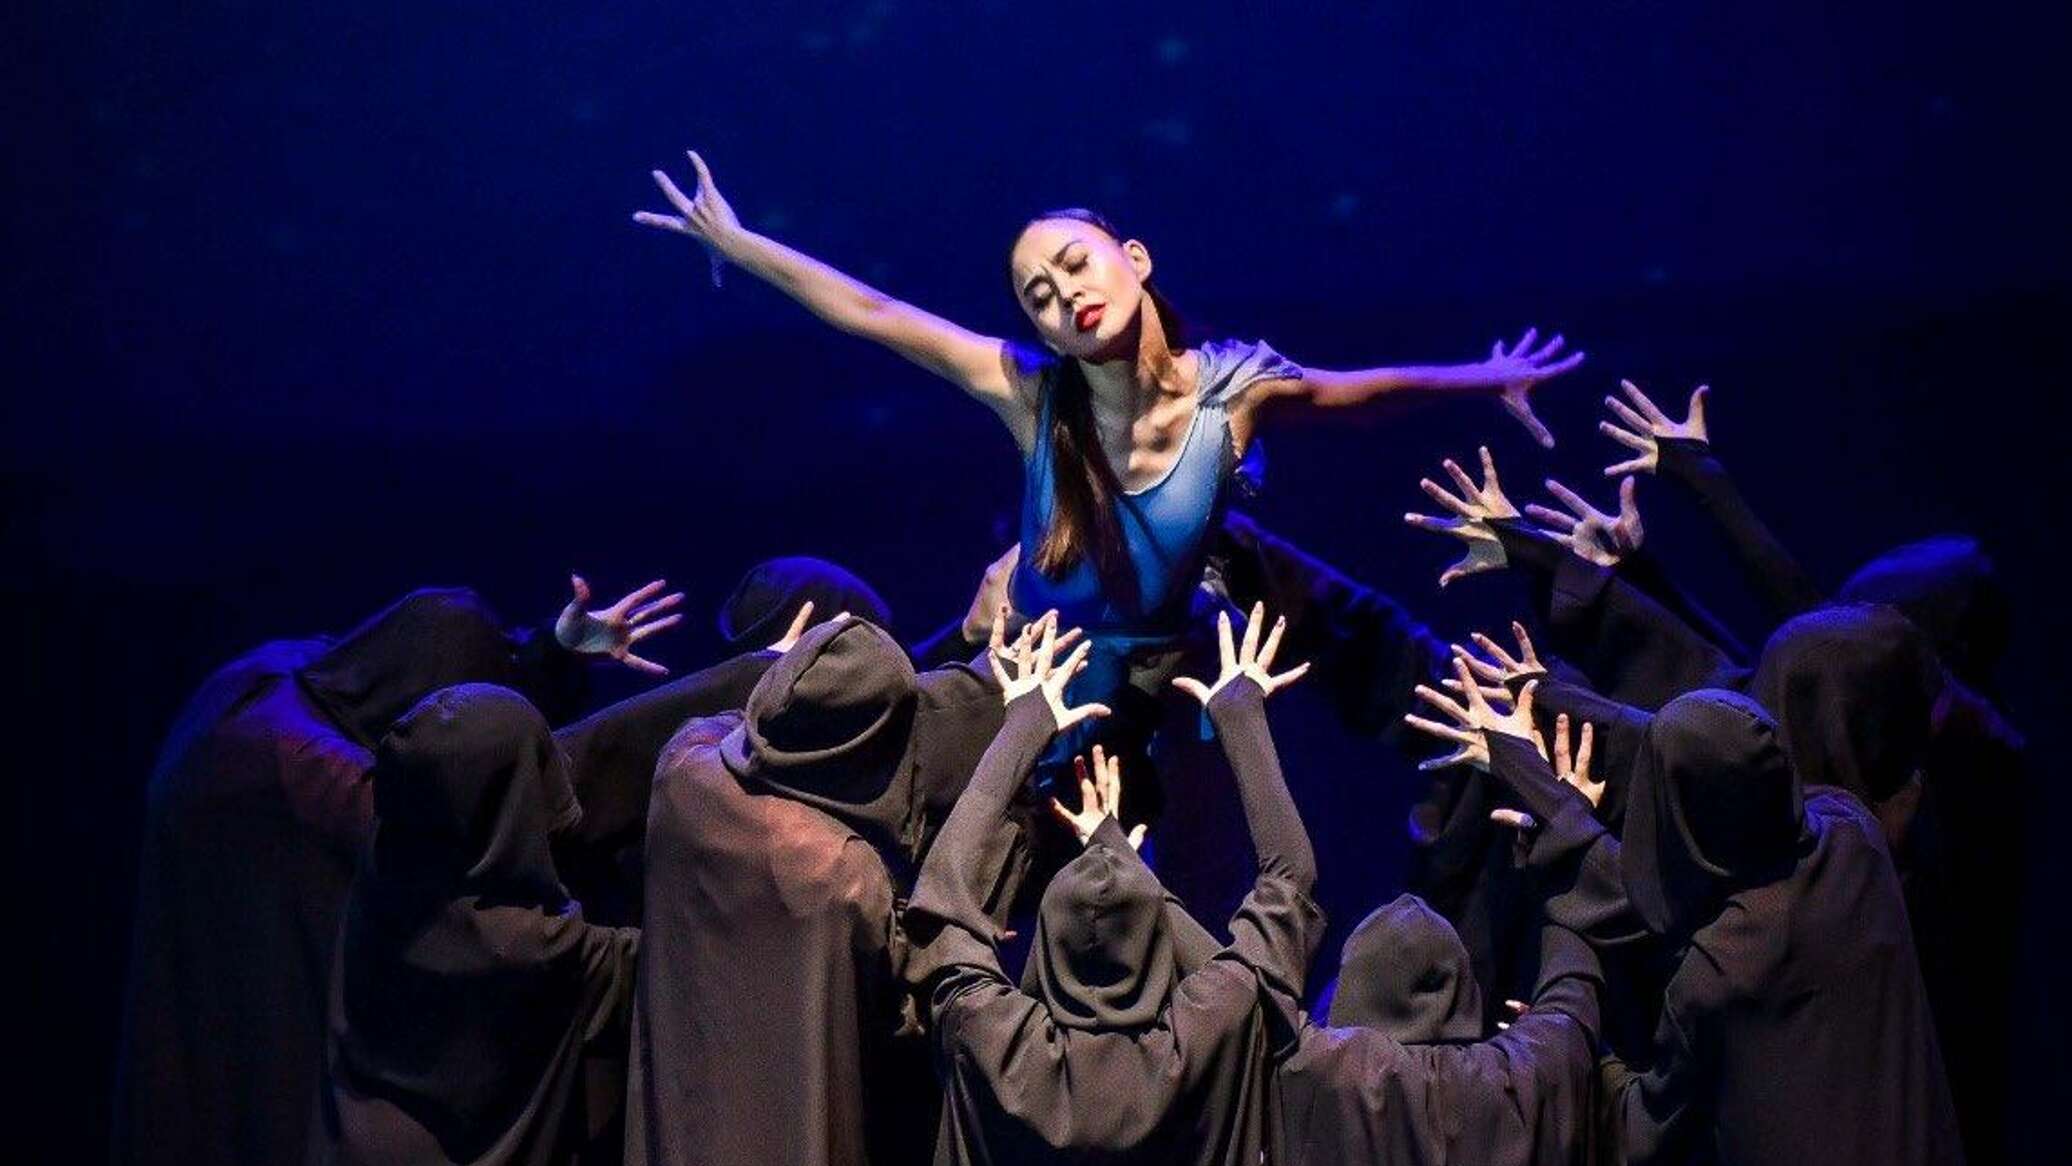 "Өңірлерде балет театры жоқ": балерина би өнерінің дамуы жайлы ойын айтты